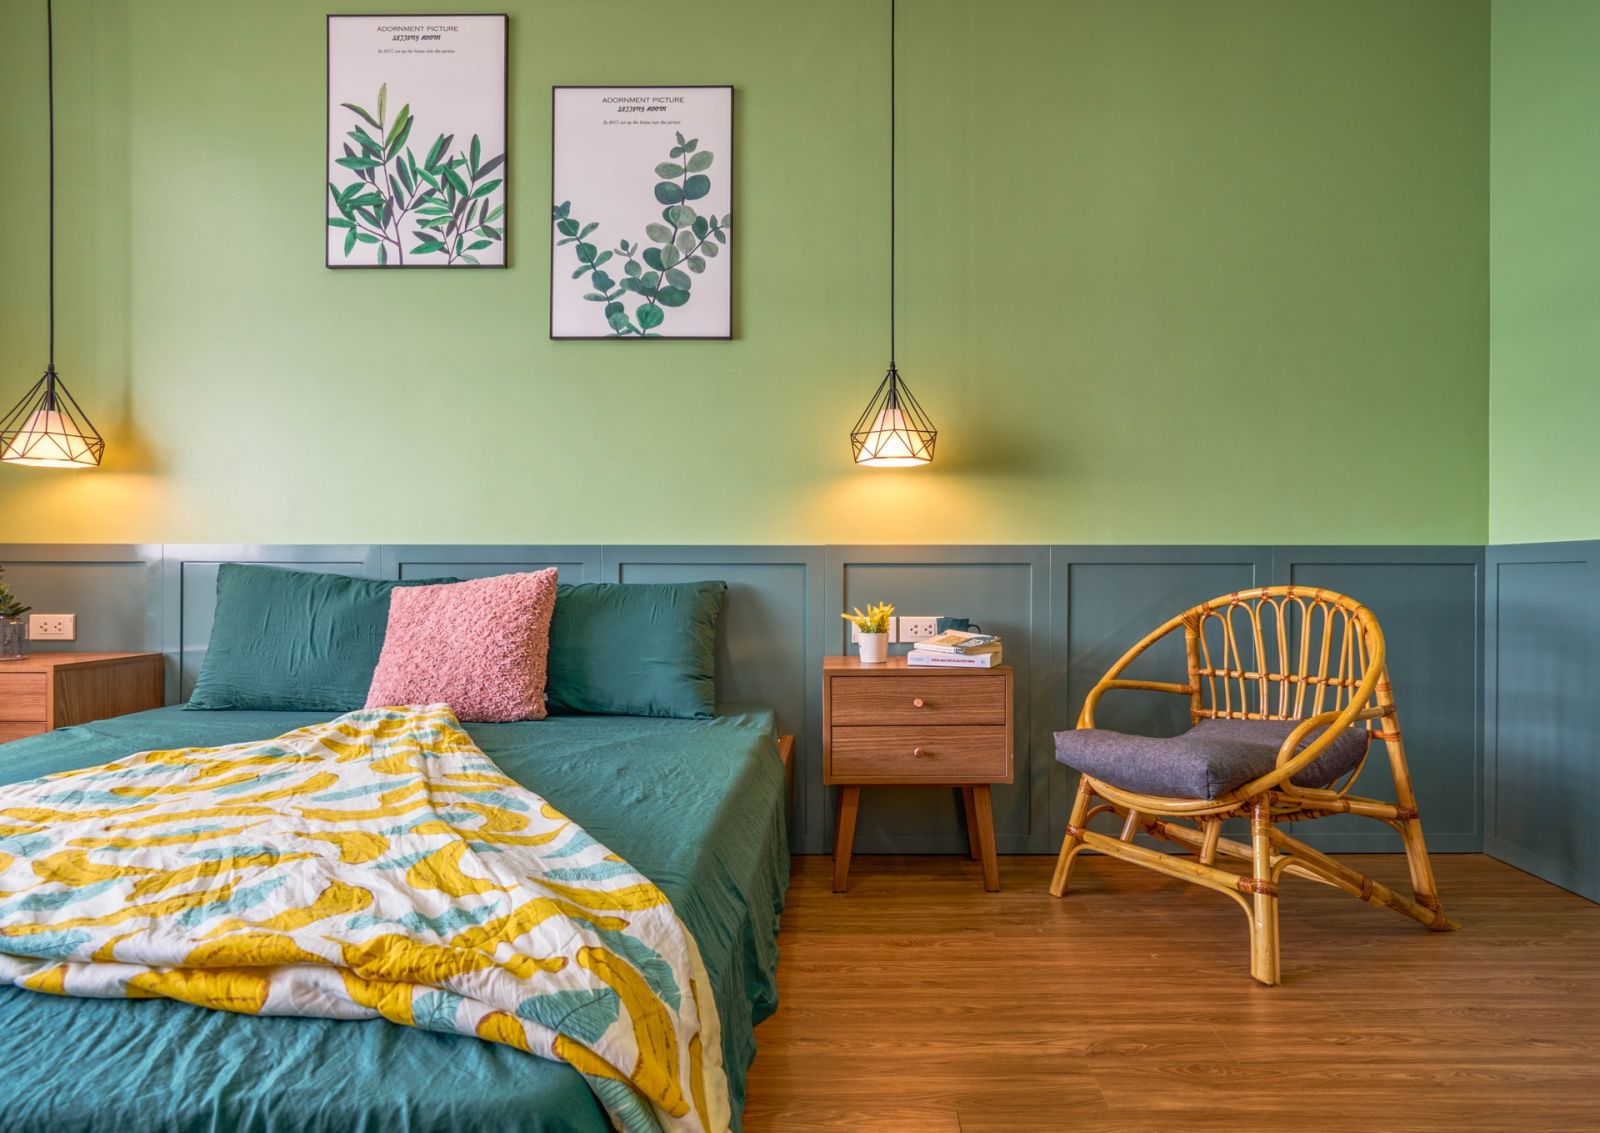 Phòng ngủ với sắc xanh lá nhạt nhẹ nhàng, tạo cảm giác thư giãn.